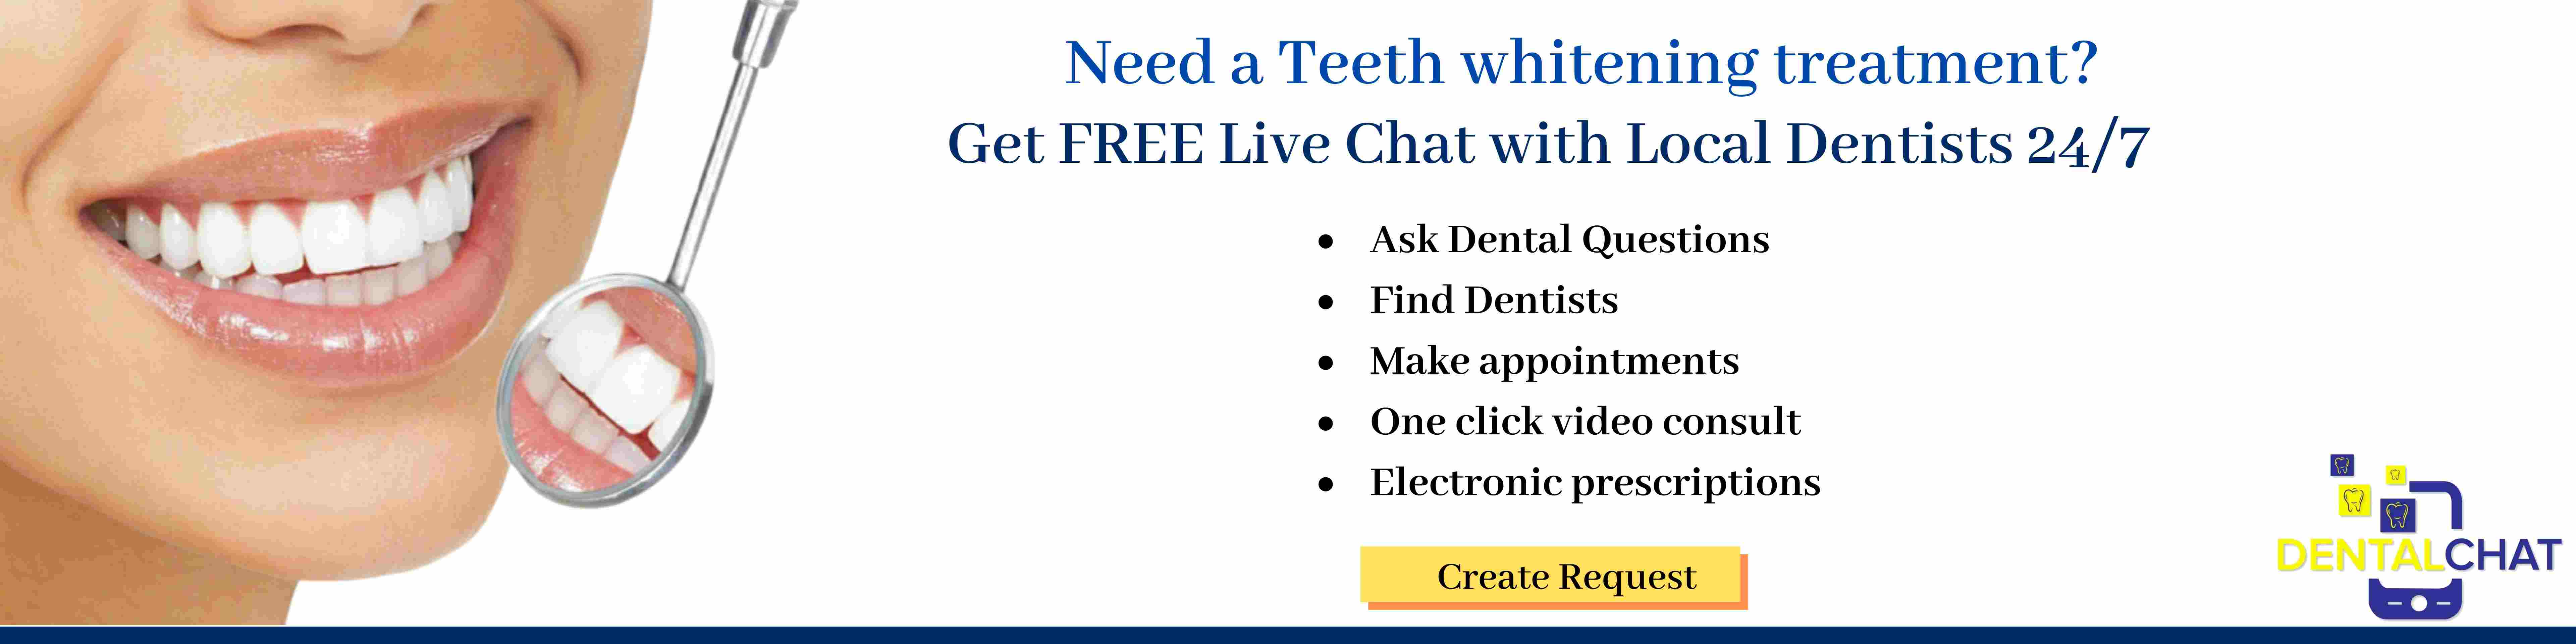 Cosmetic TeleDental Care Blogging, Teeth Whitening Information Chatting, Teeth Whitening Chat Online